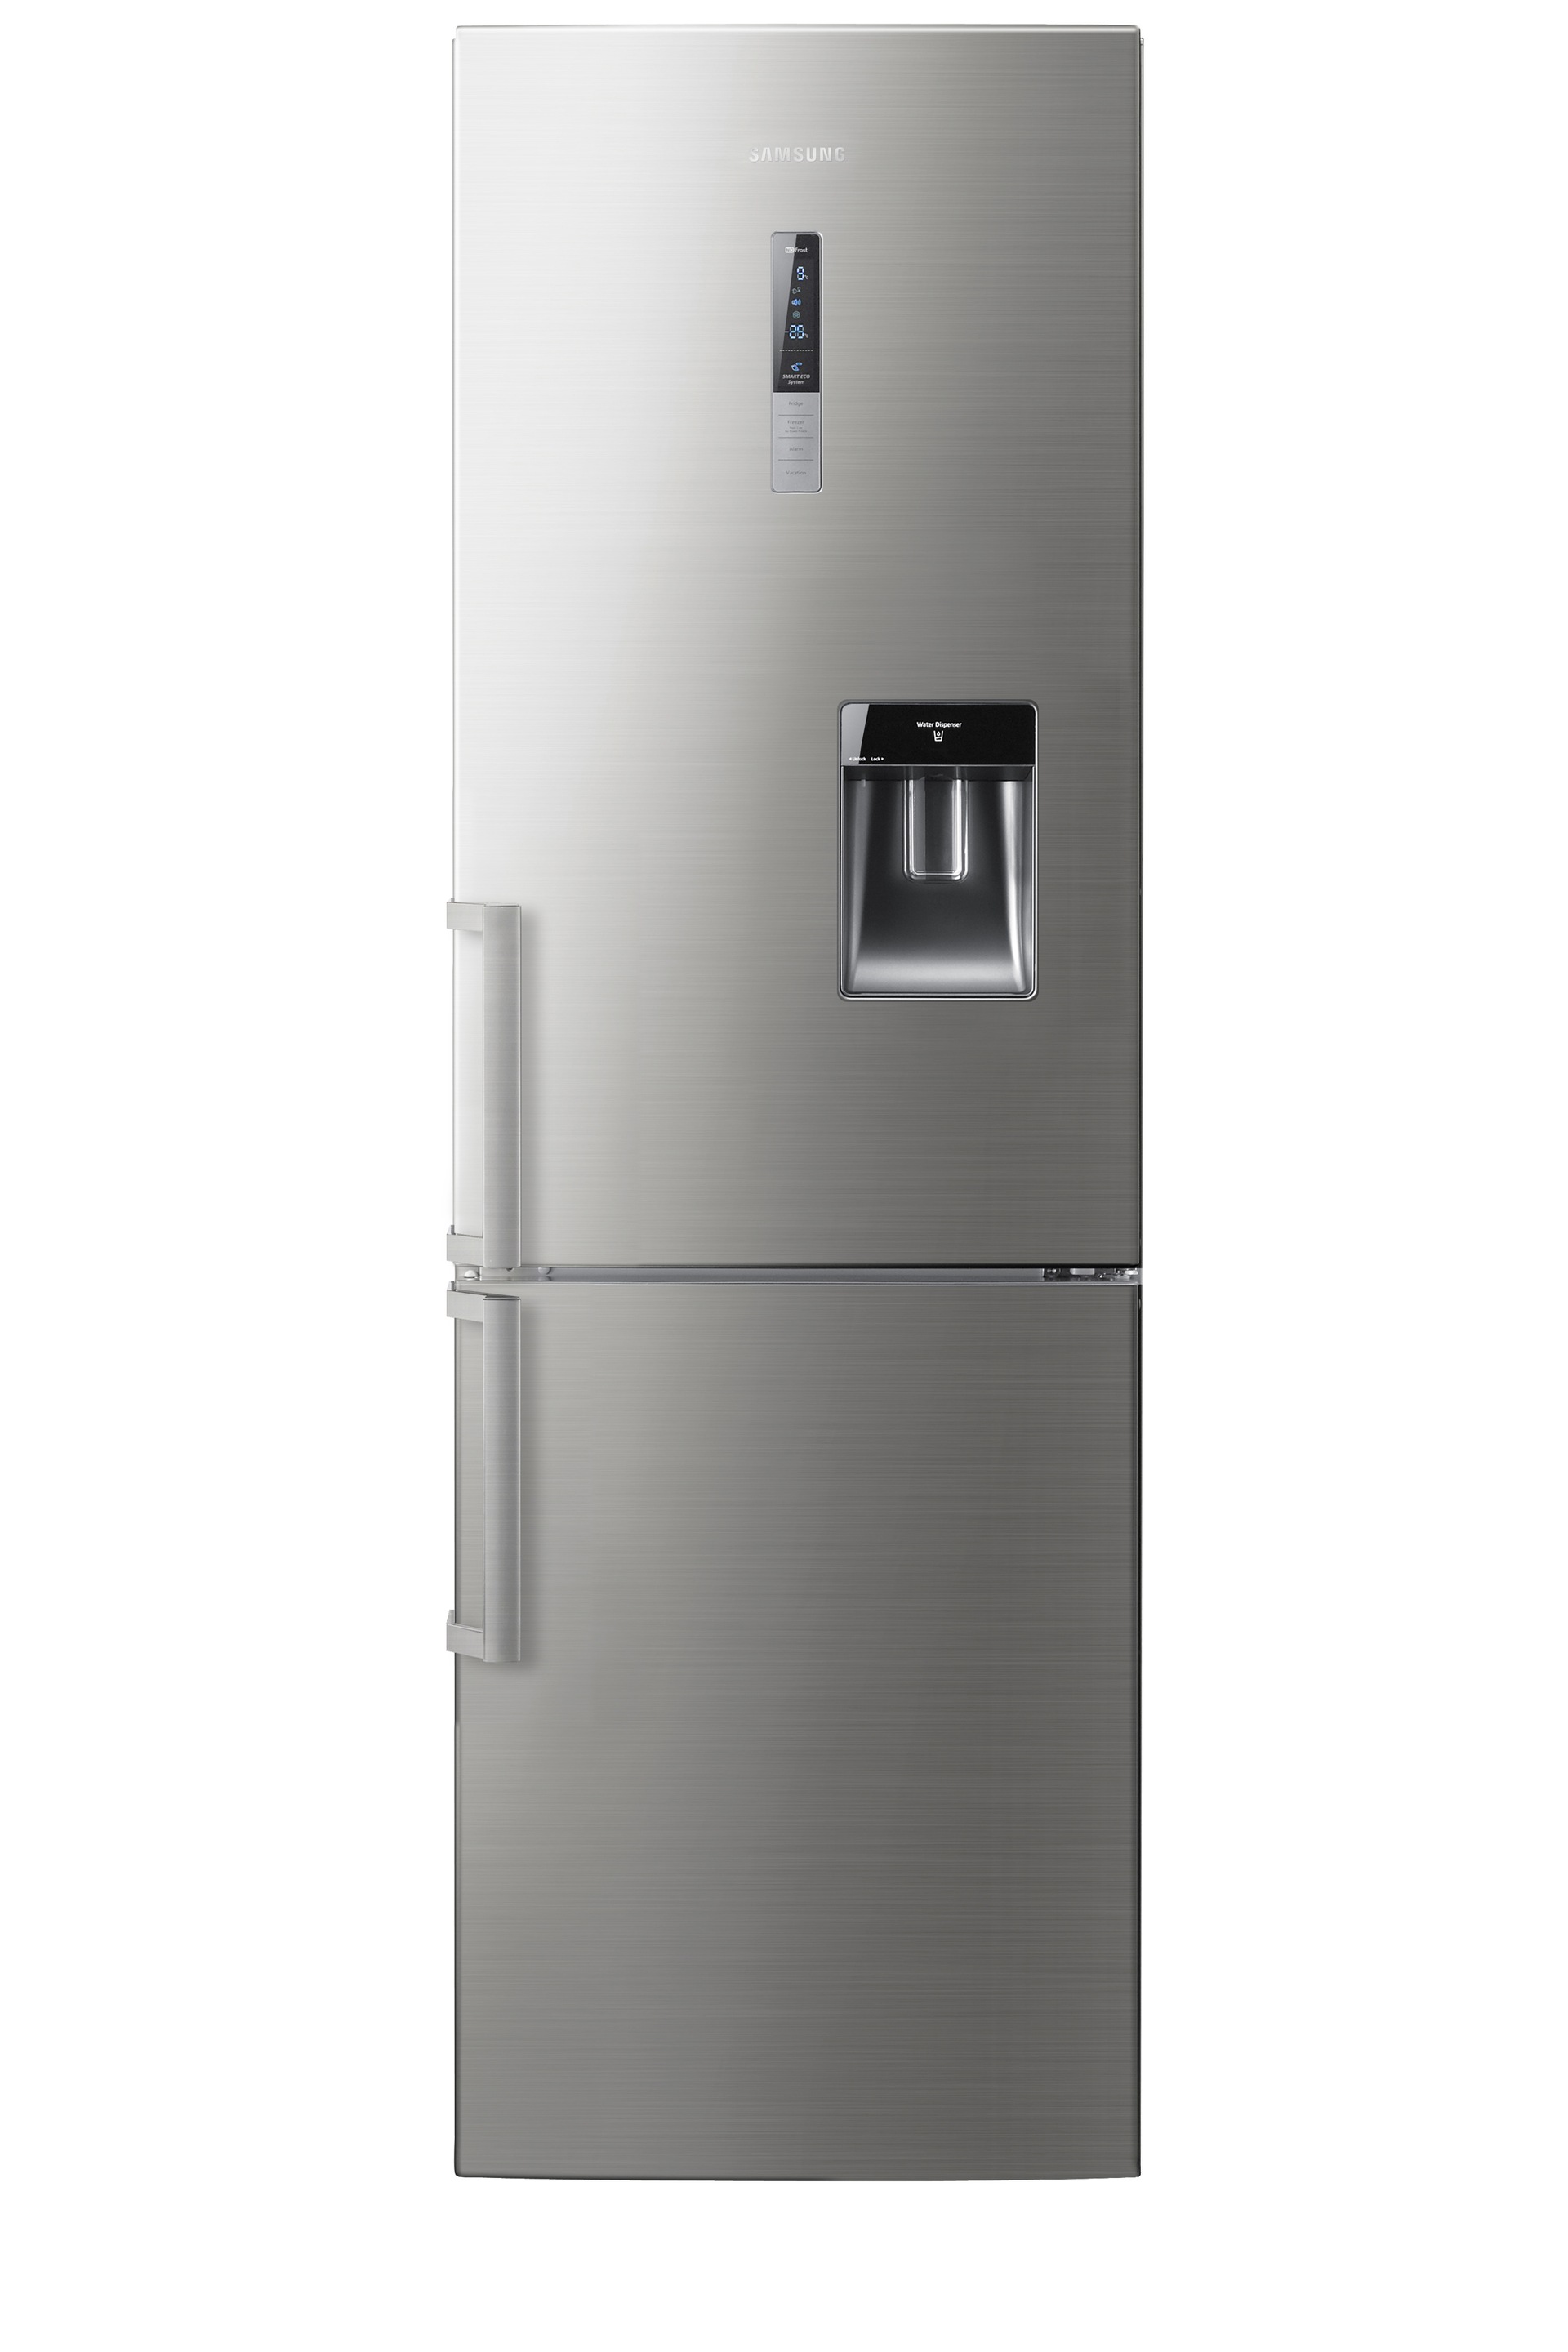 RL56GWEMG SAMSUNG Réfrigérateur combiné pas cher ✔️ Garantie 5